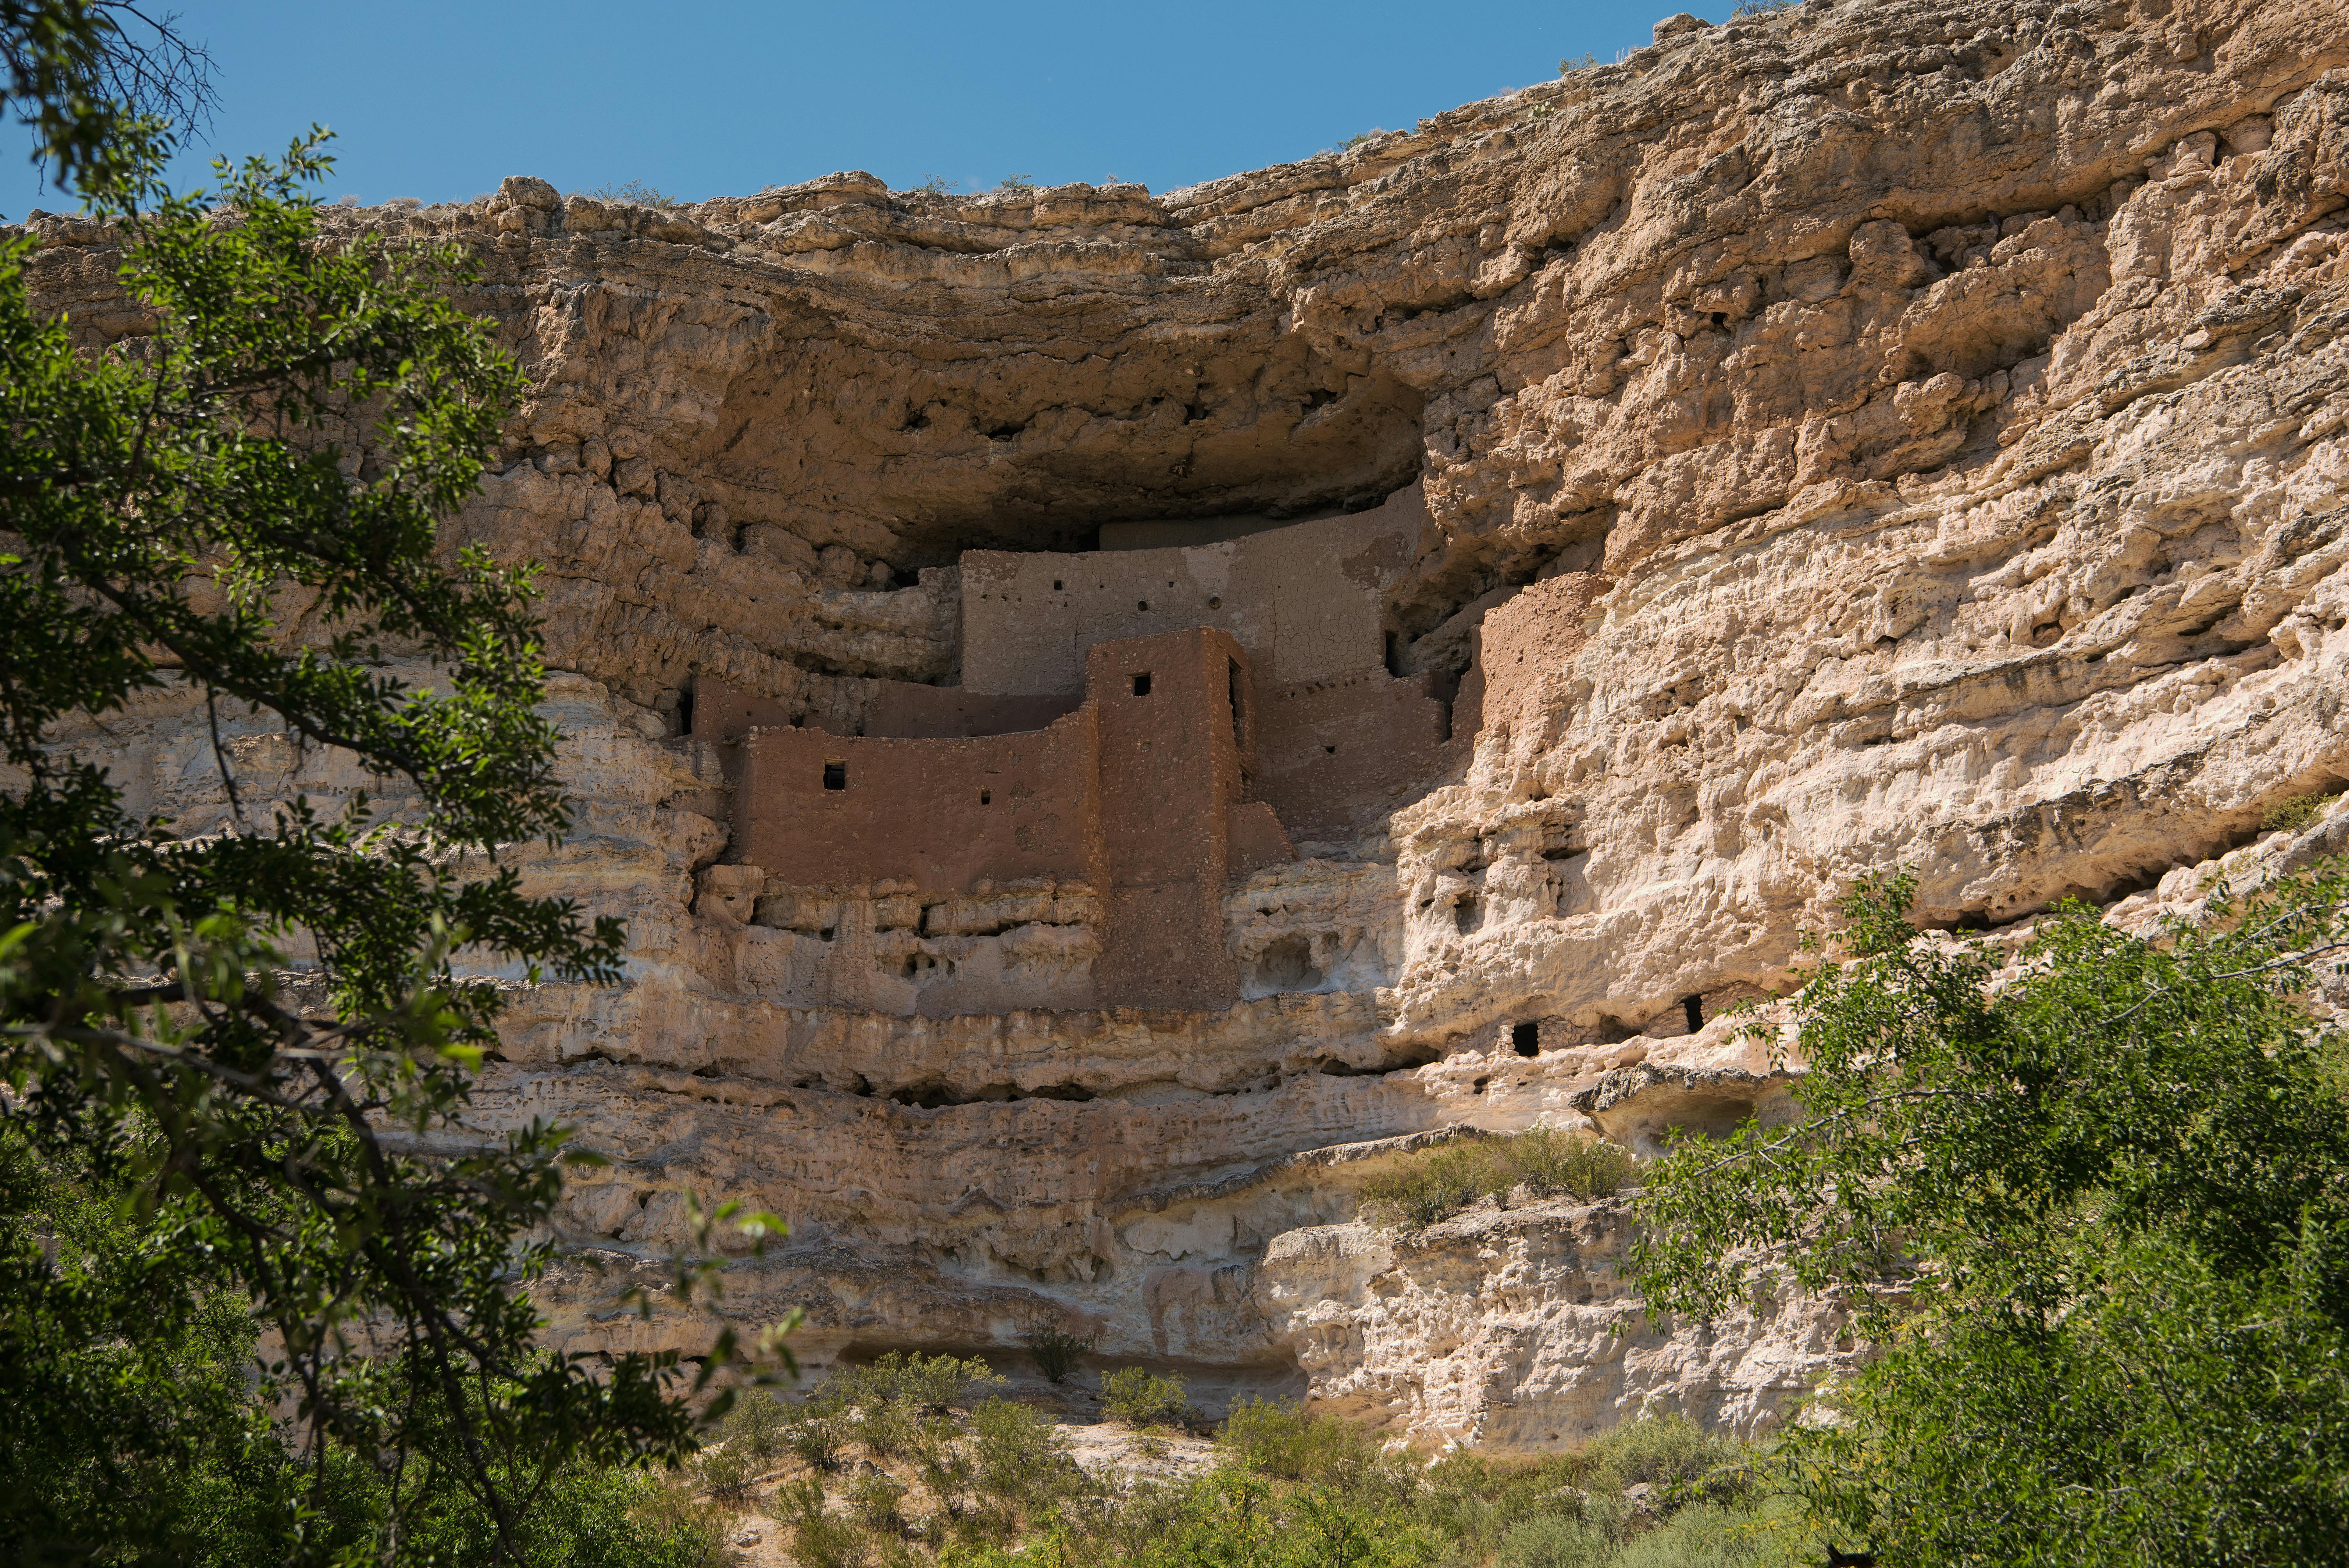 Montezuma Castle National Monument pit stop during Las Vegas to Phoenix road trip